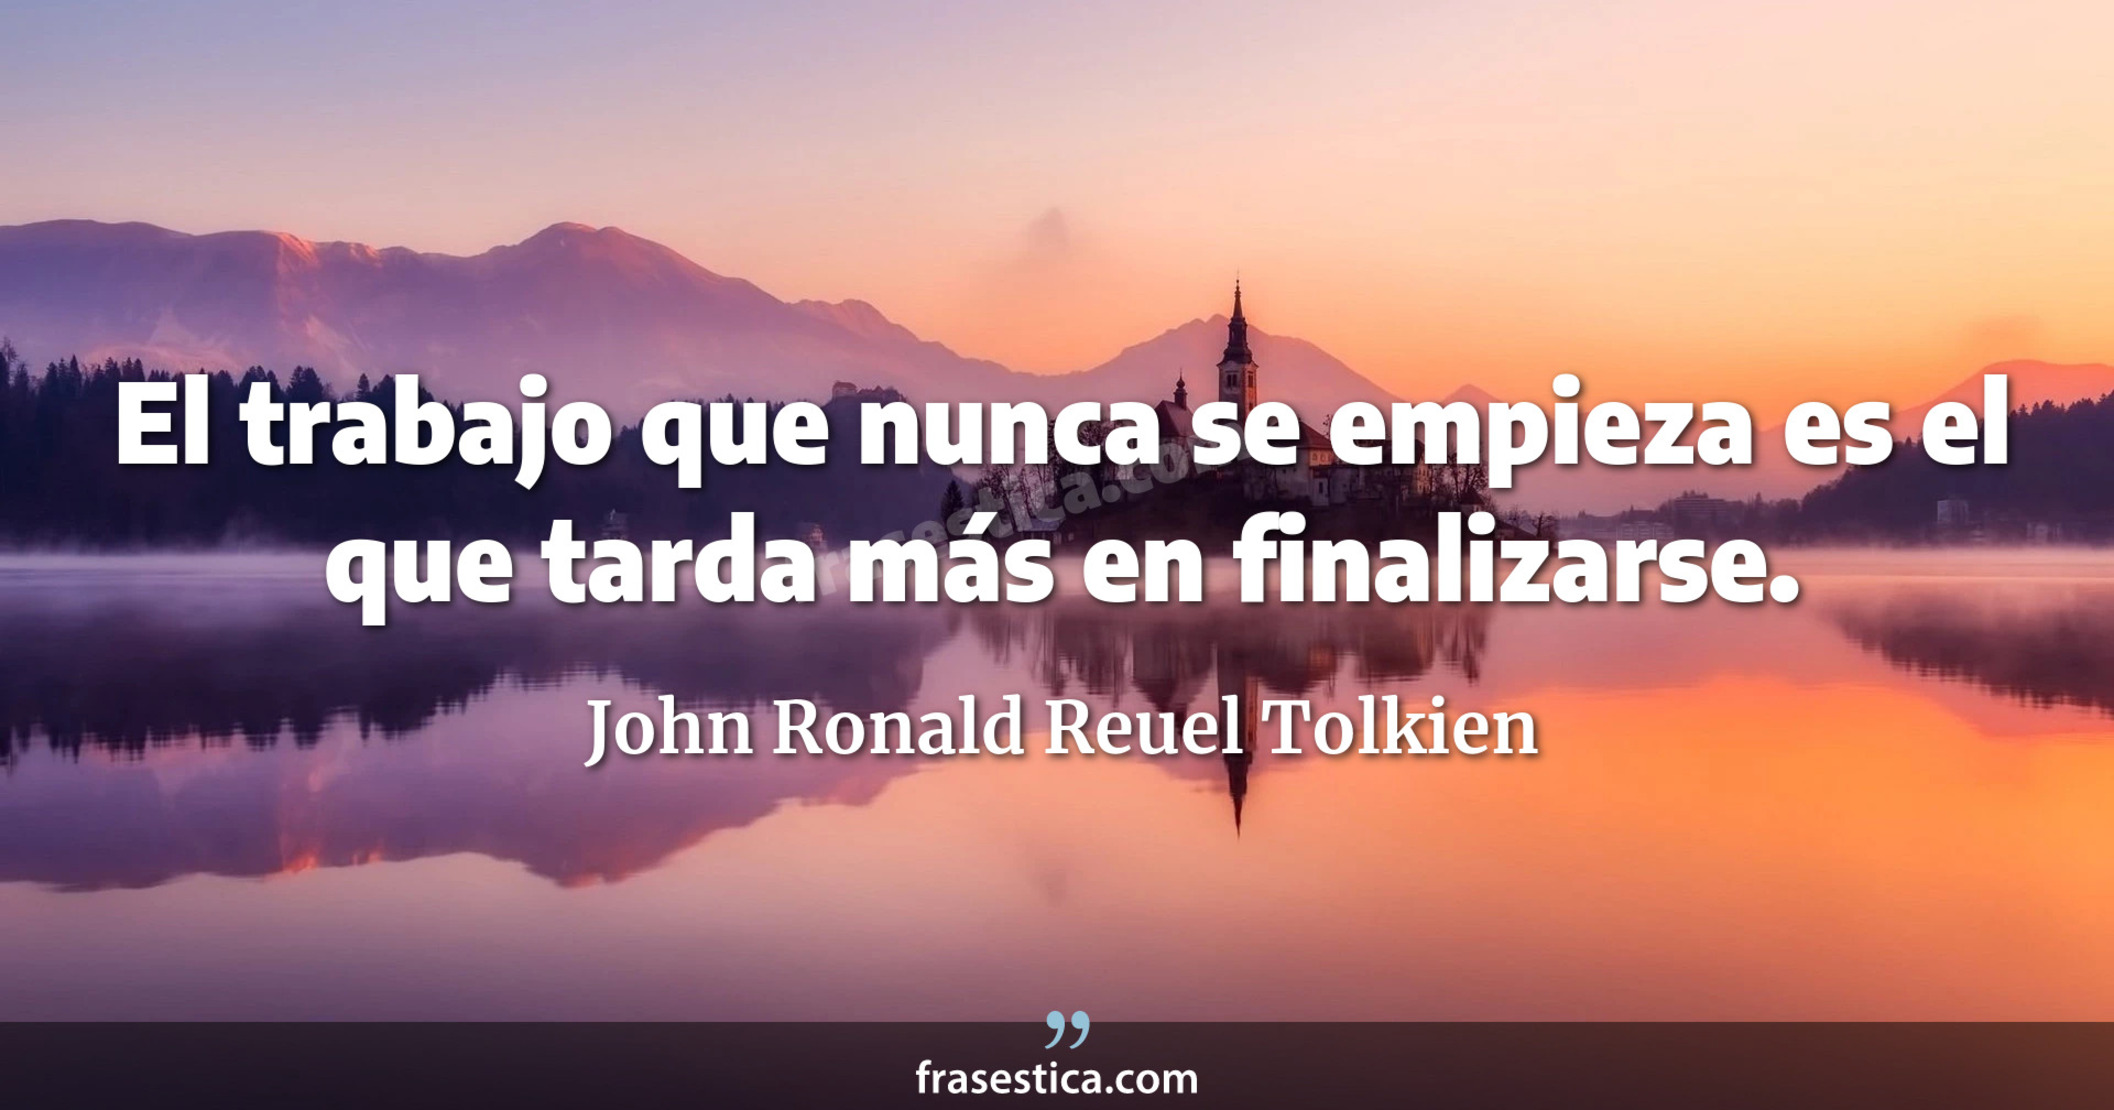 El trabajo que nunca se empieza es el que tarda más en finalizarse. - John Ronald Reuel Tolkien